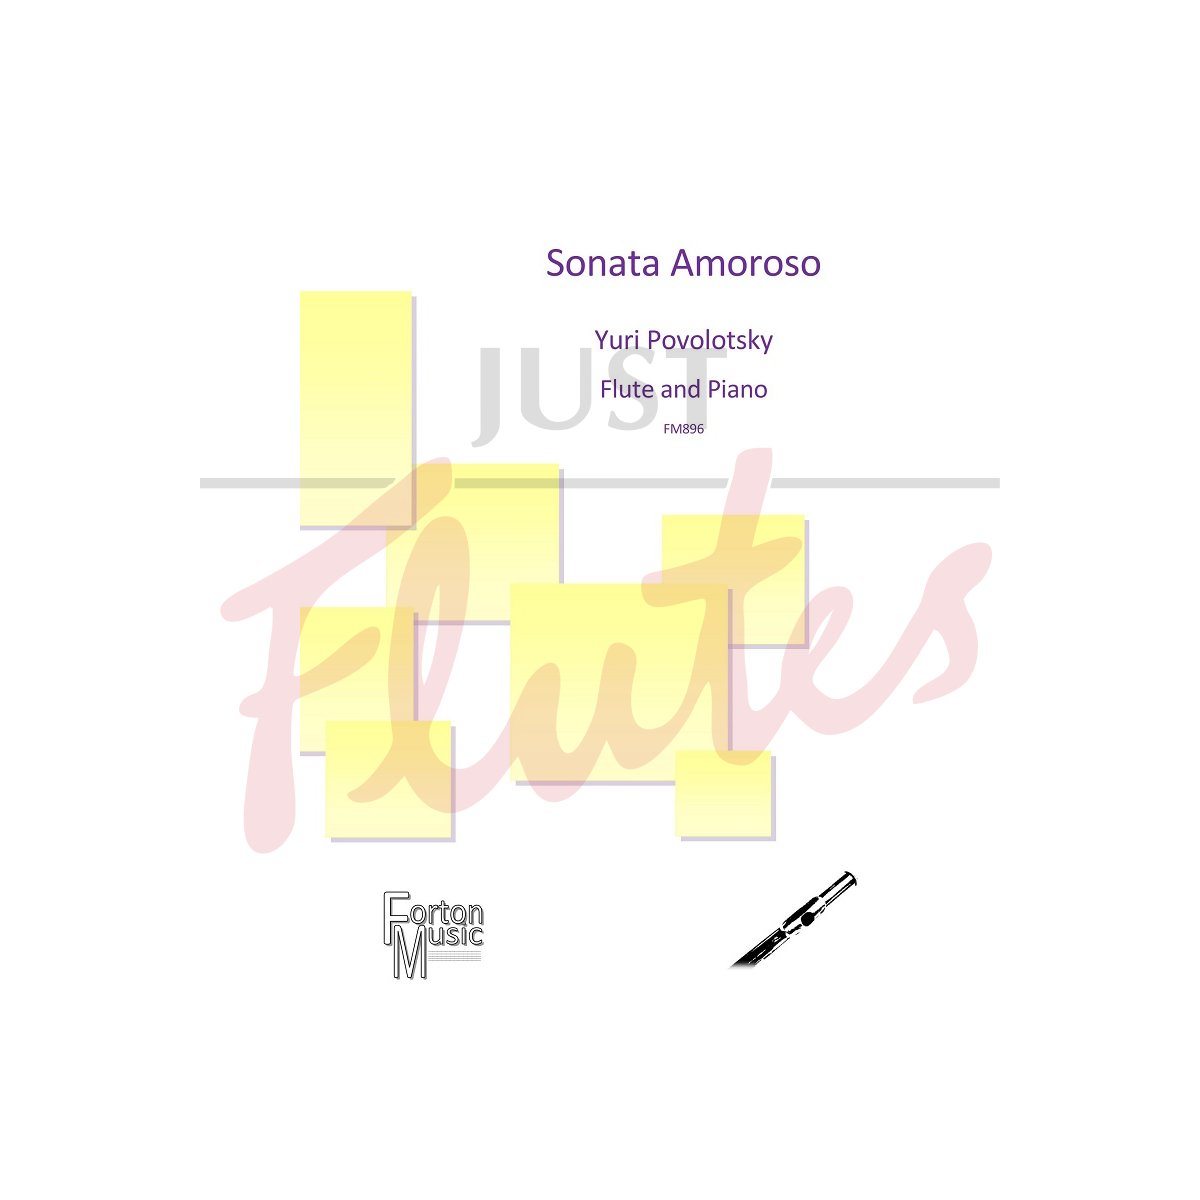 Sonata Amoroso for Flute and Piano